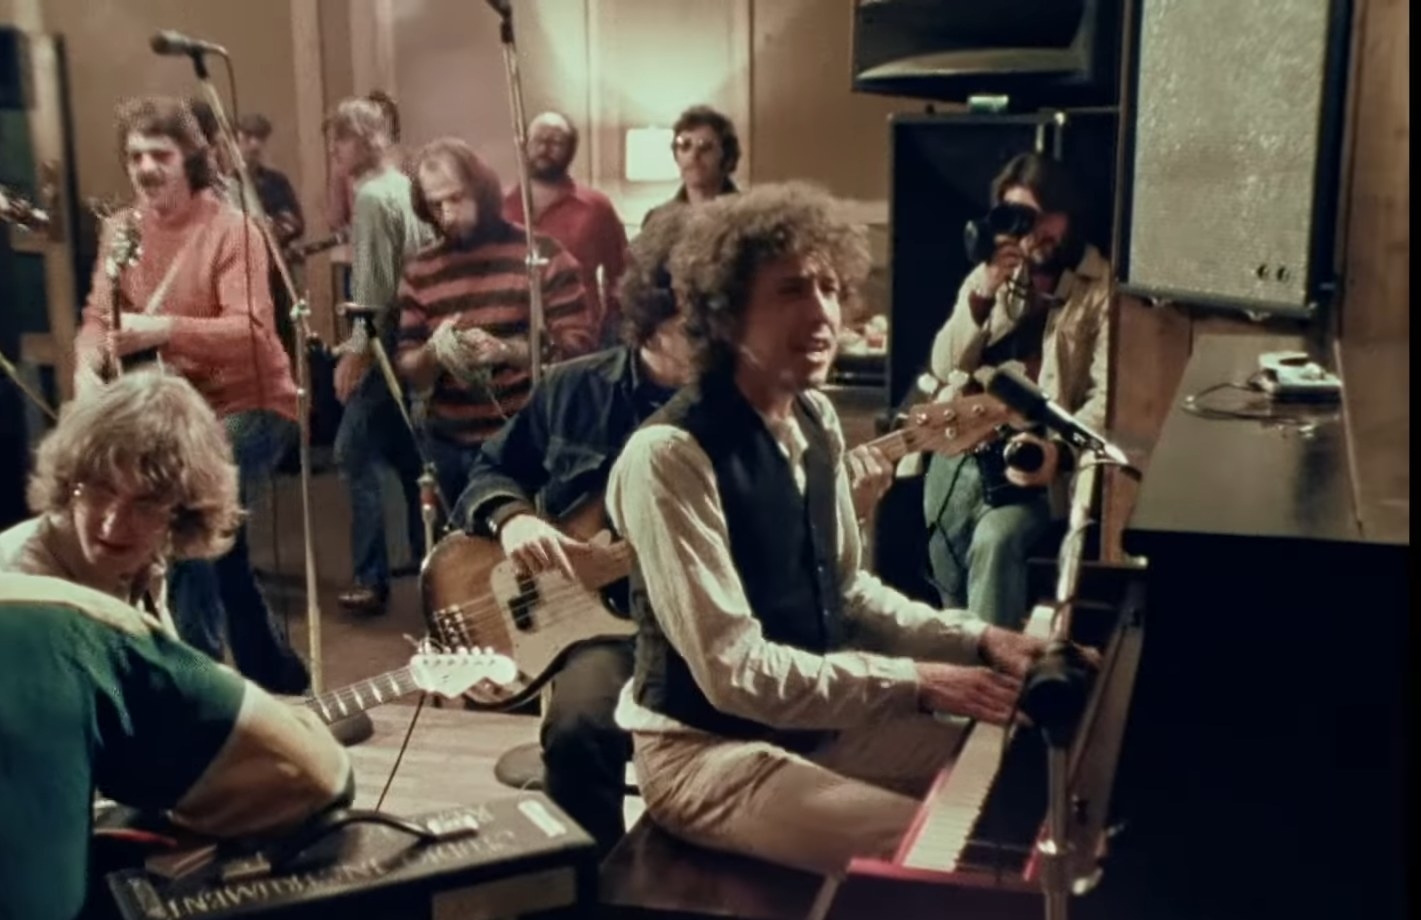 Bob Dylan plays at a piano